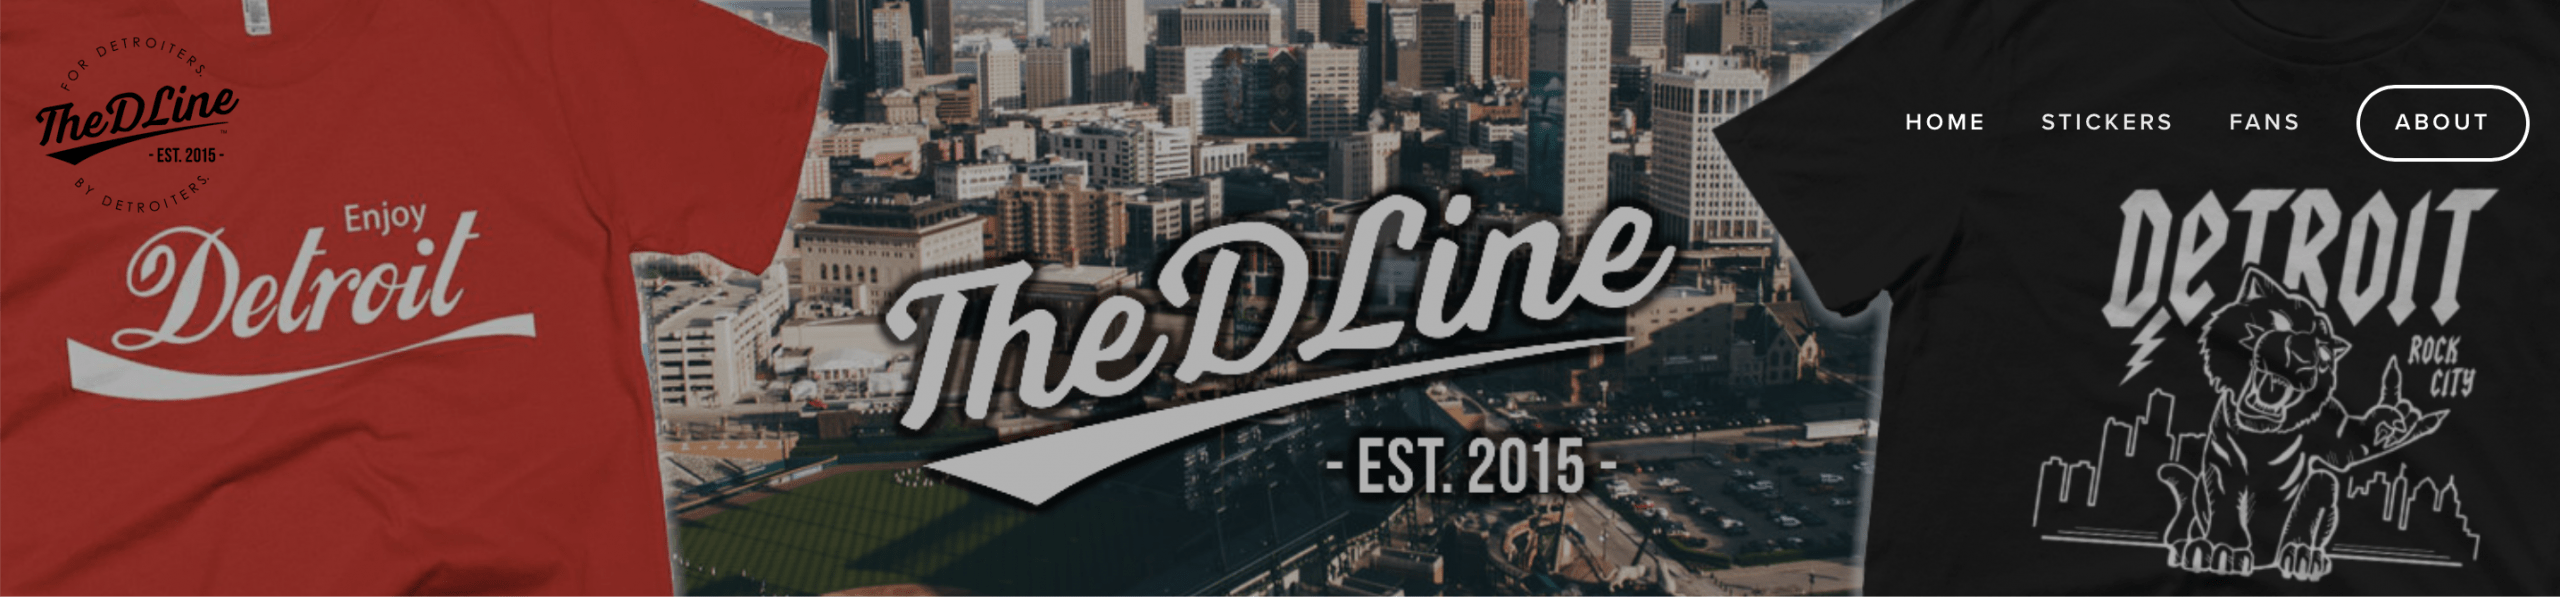 Detroit Lions, The D Line